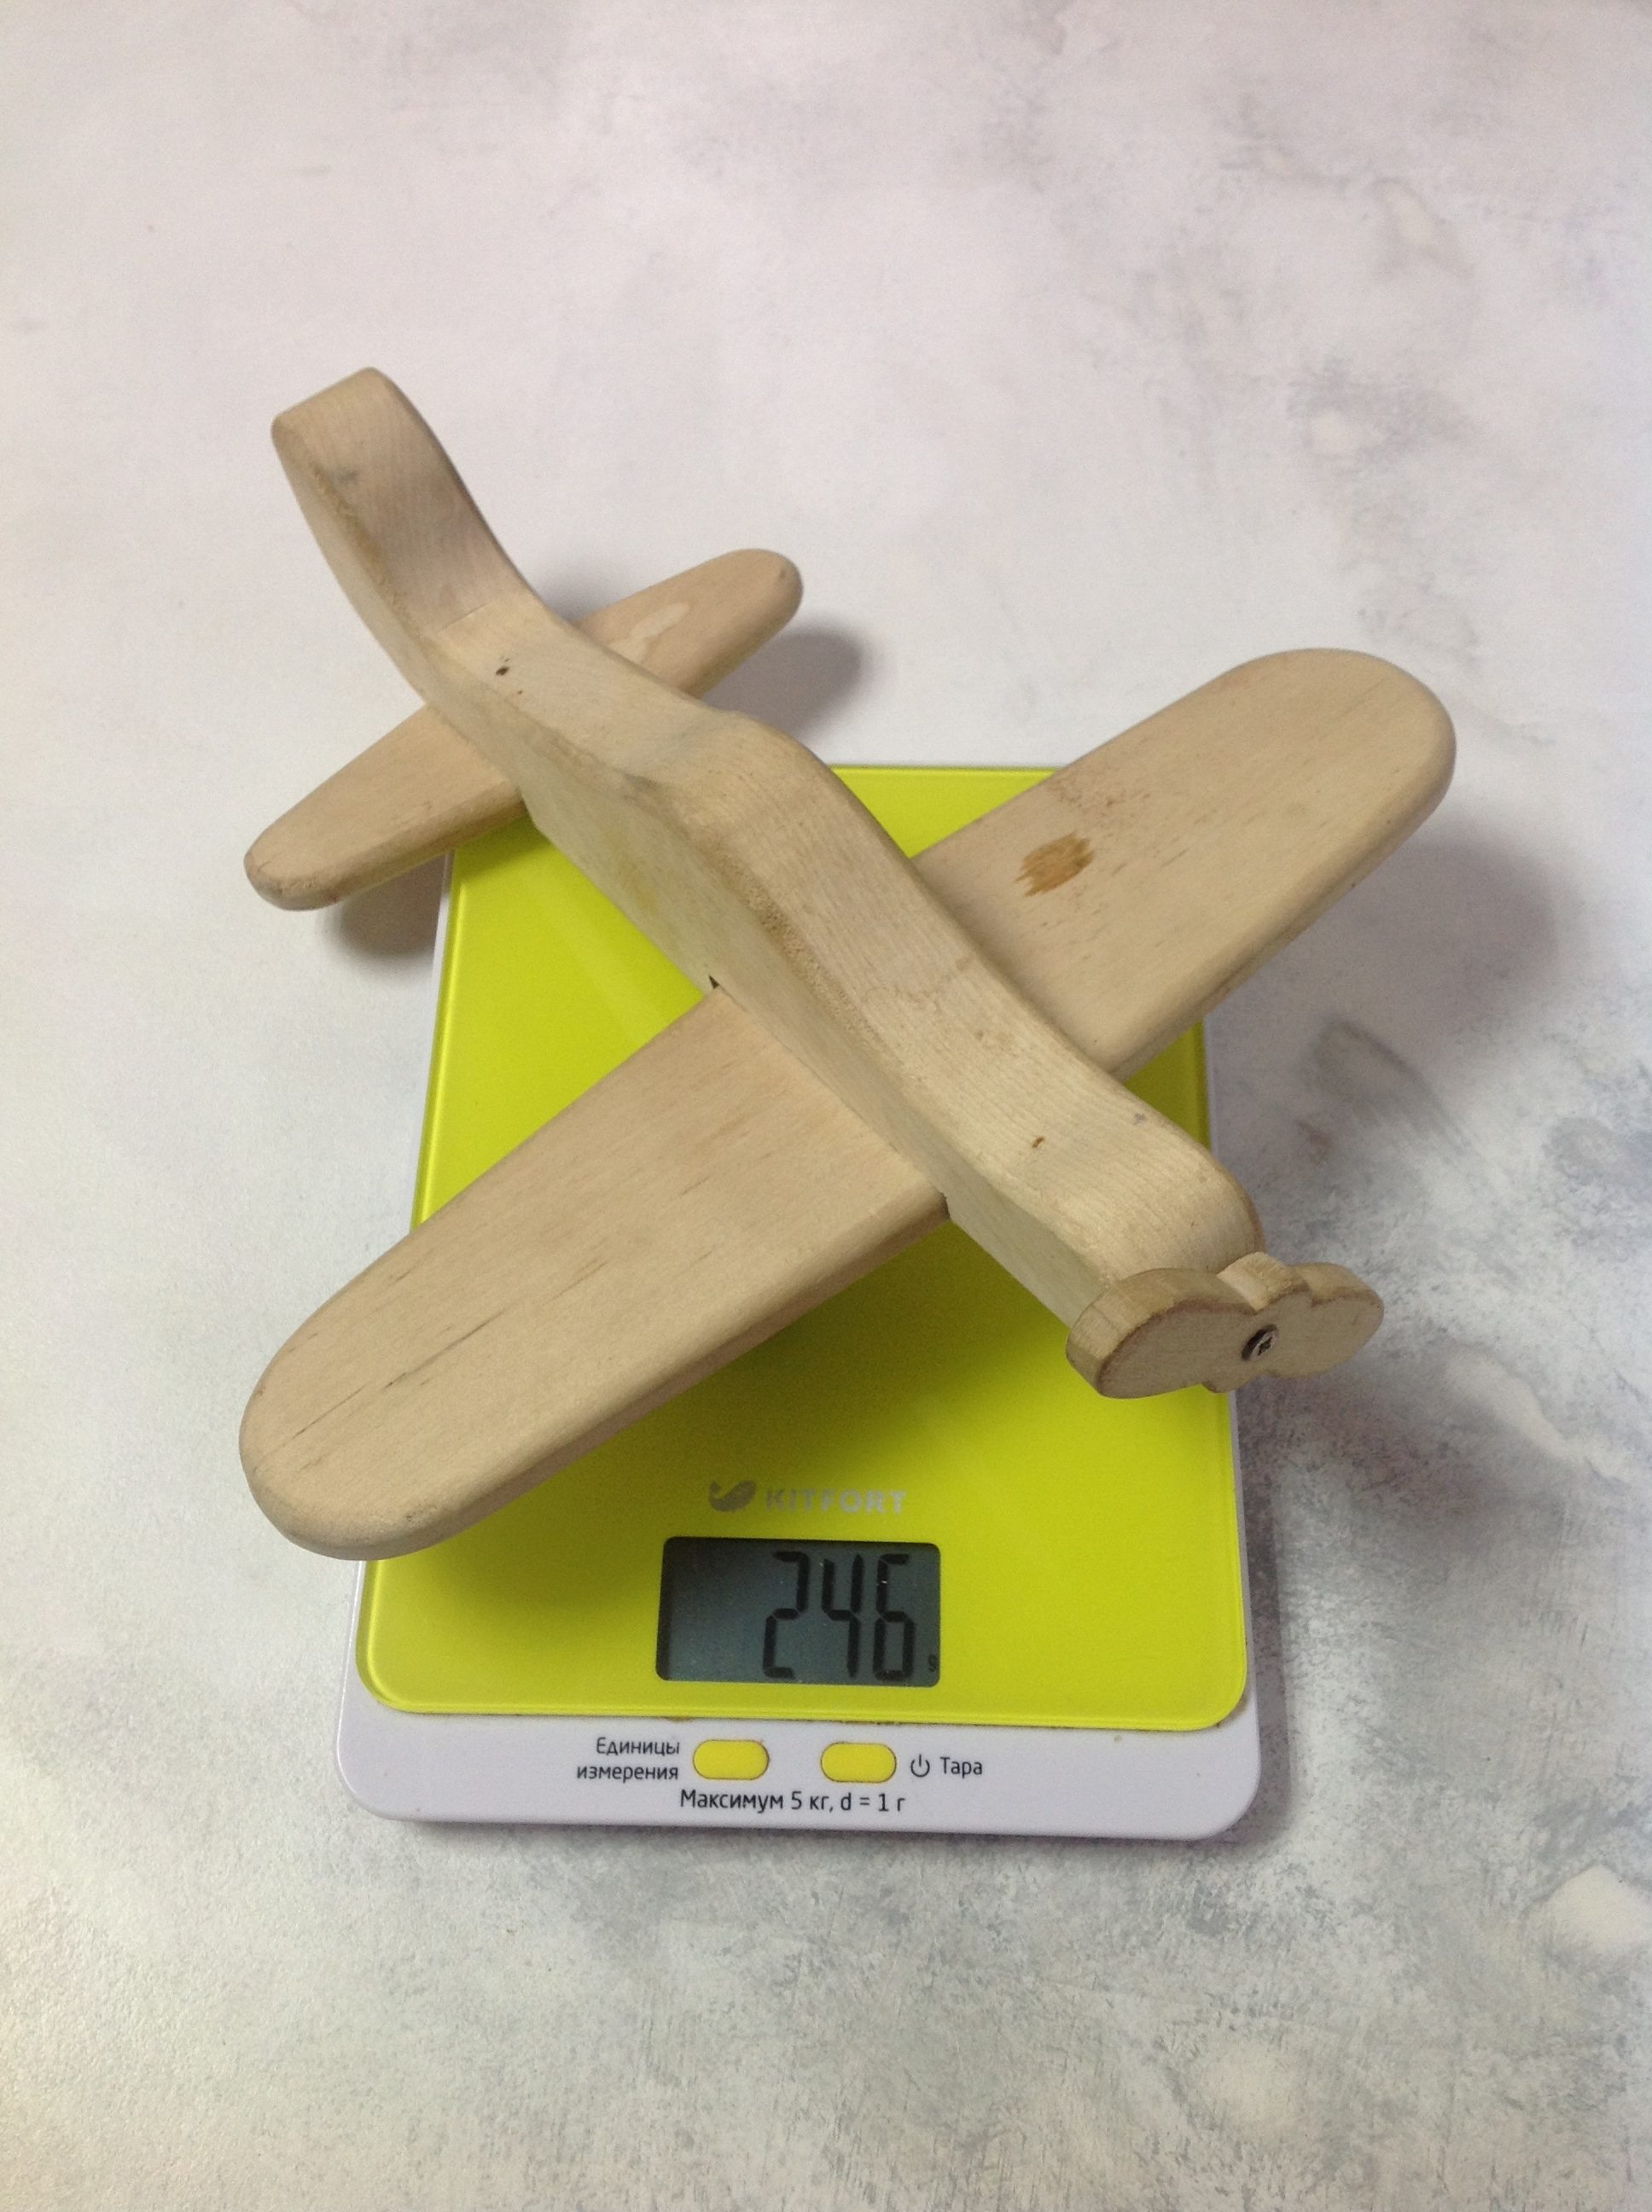 вес самолета игрушечного деревянного